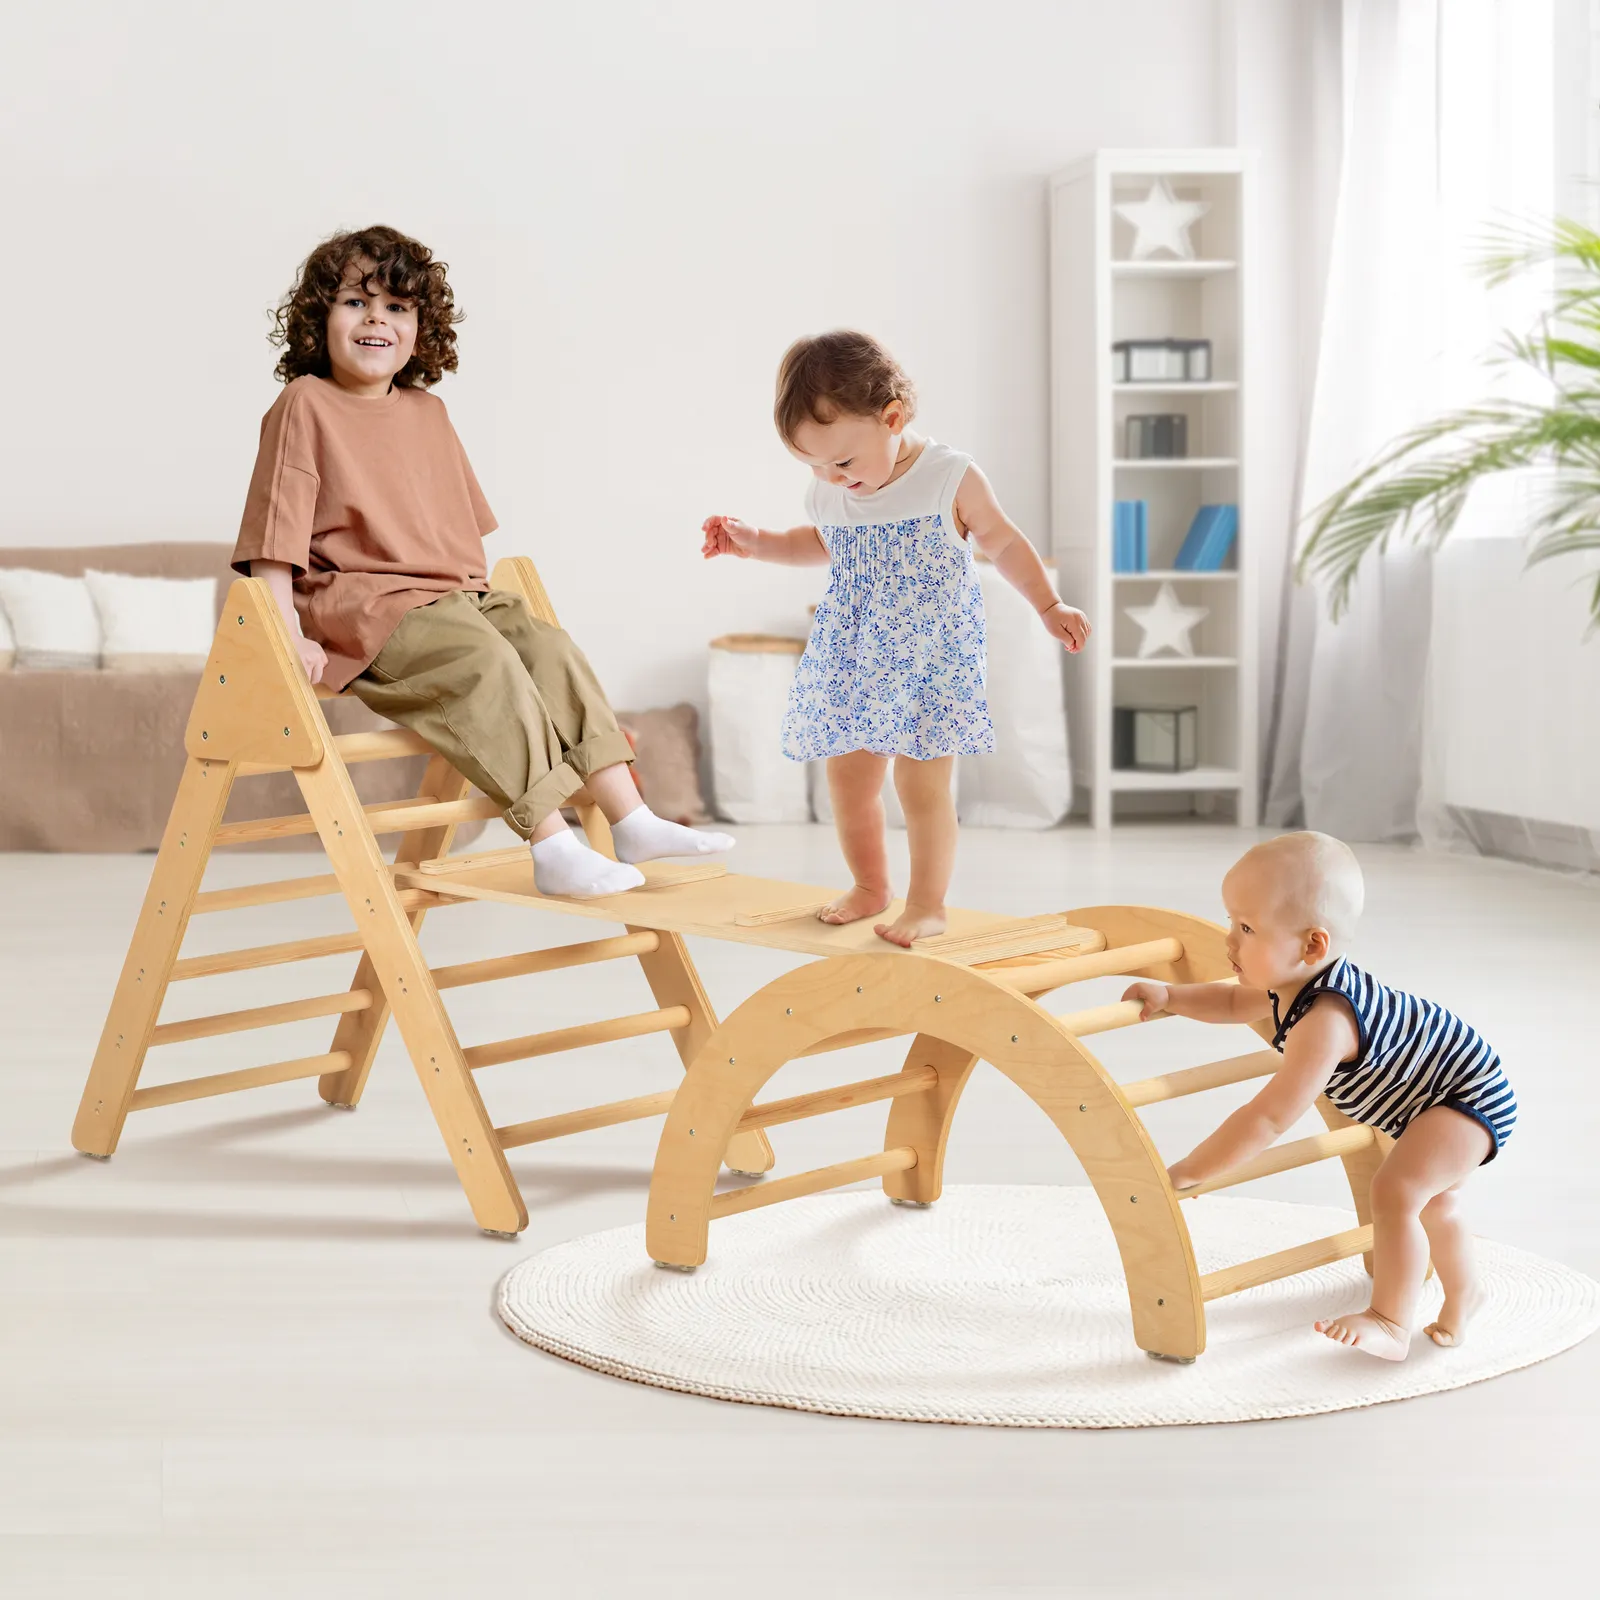 Kletterdreieck-Set mit Rampe für den Innenbereich 3 in 1 Holz-Dreieck-Klettergerüst mit Leiter für Kinder